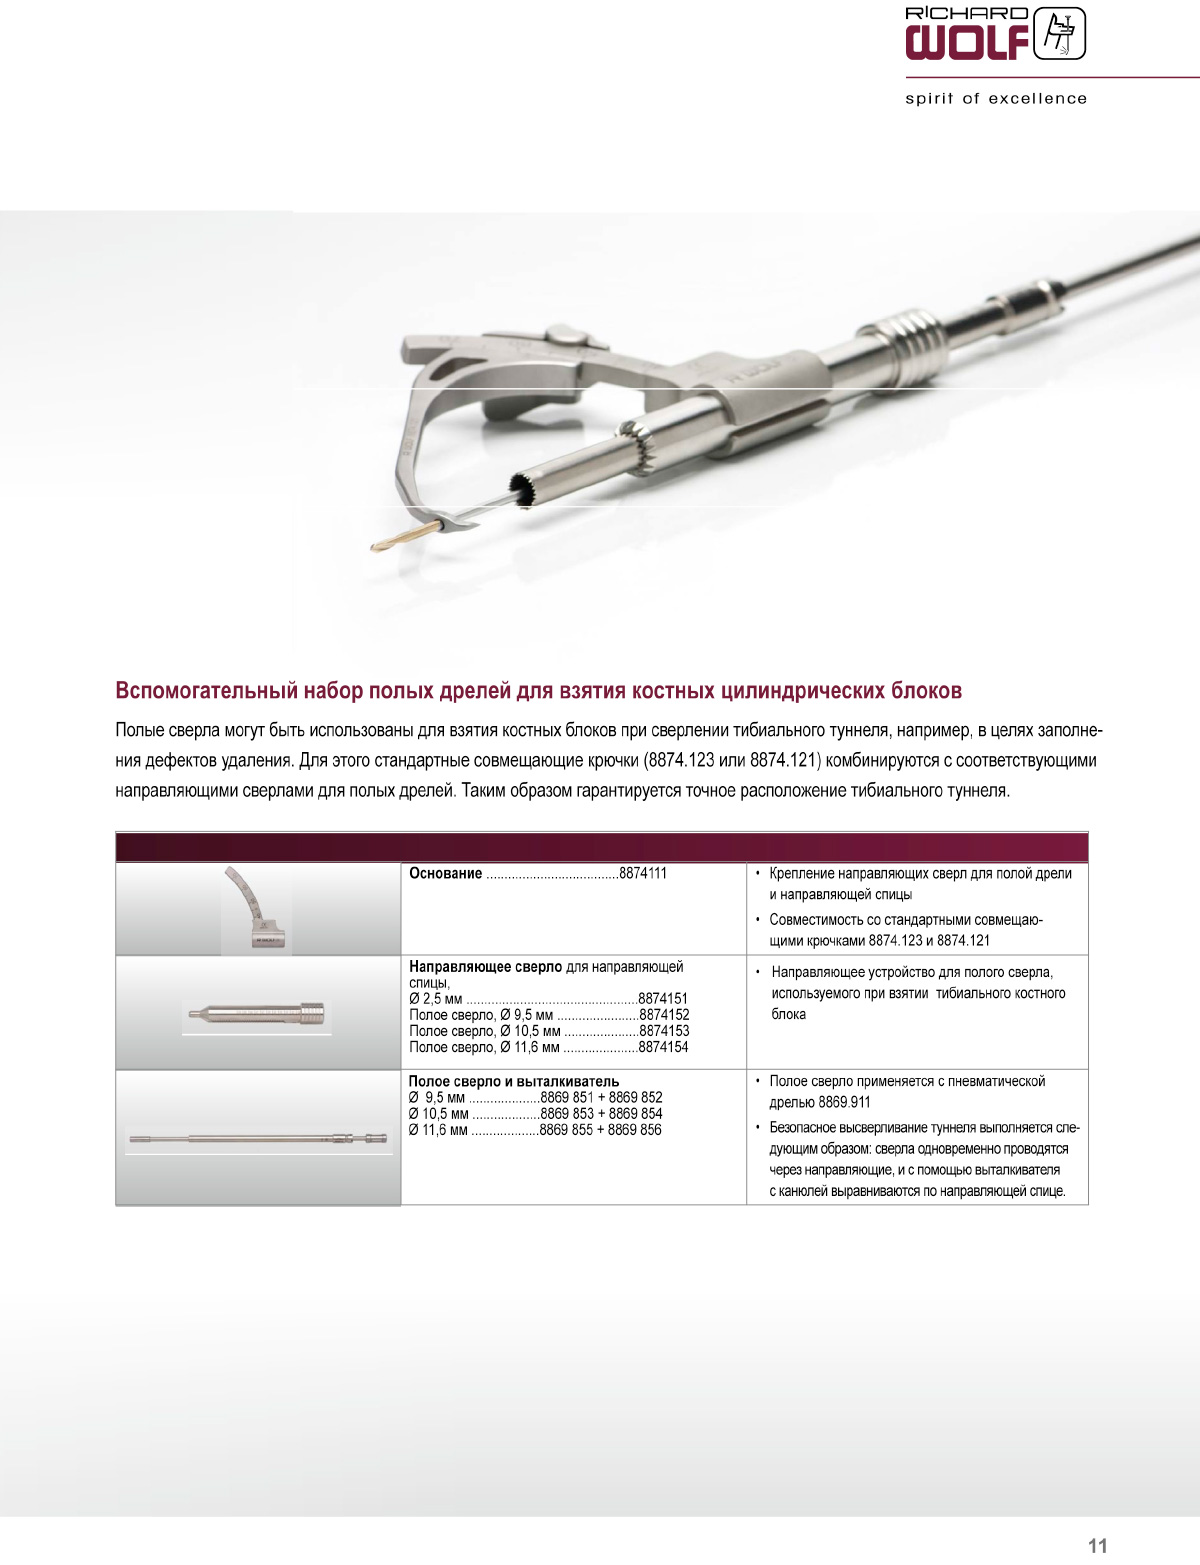 Инструментальная система для артроскопической хирургии крестообразной связки Graftline